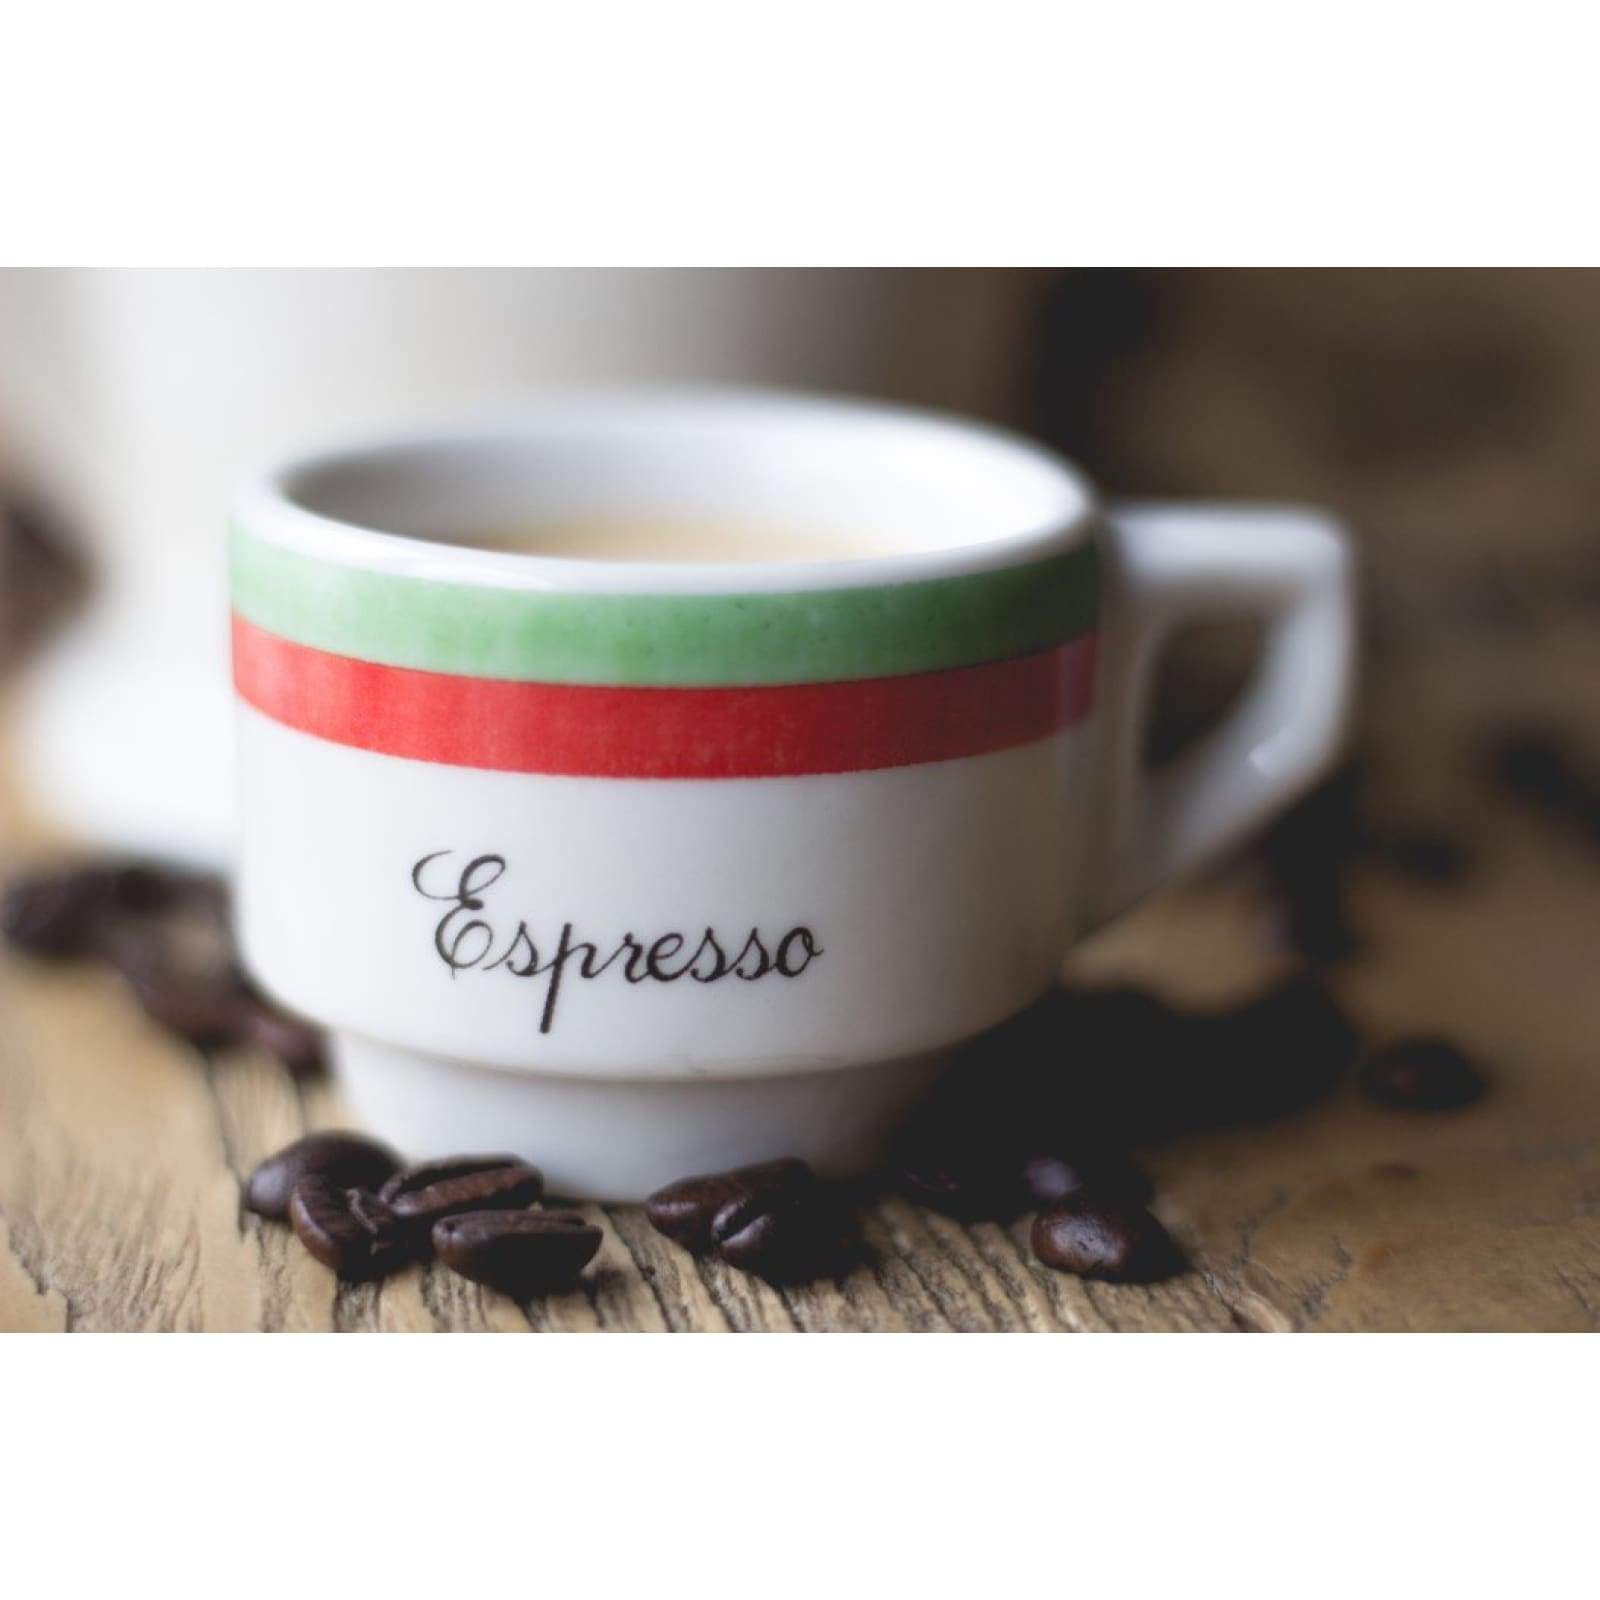 Arrosto Italiano Miscela Di Caffè - 12oz / Espresso - Coffee - $15.25